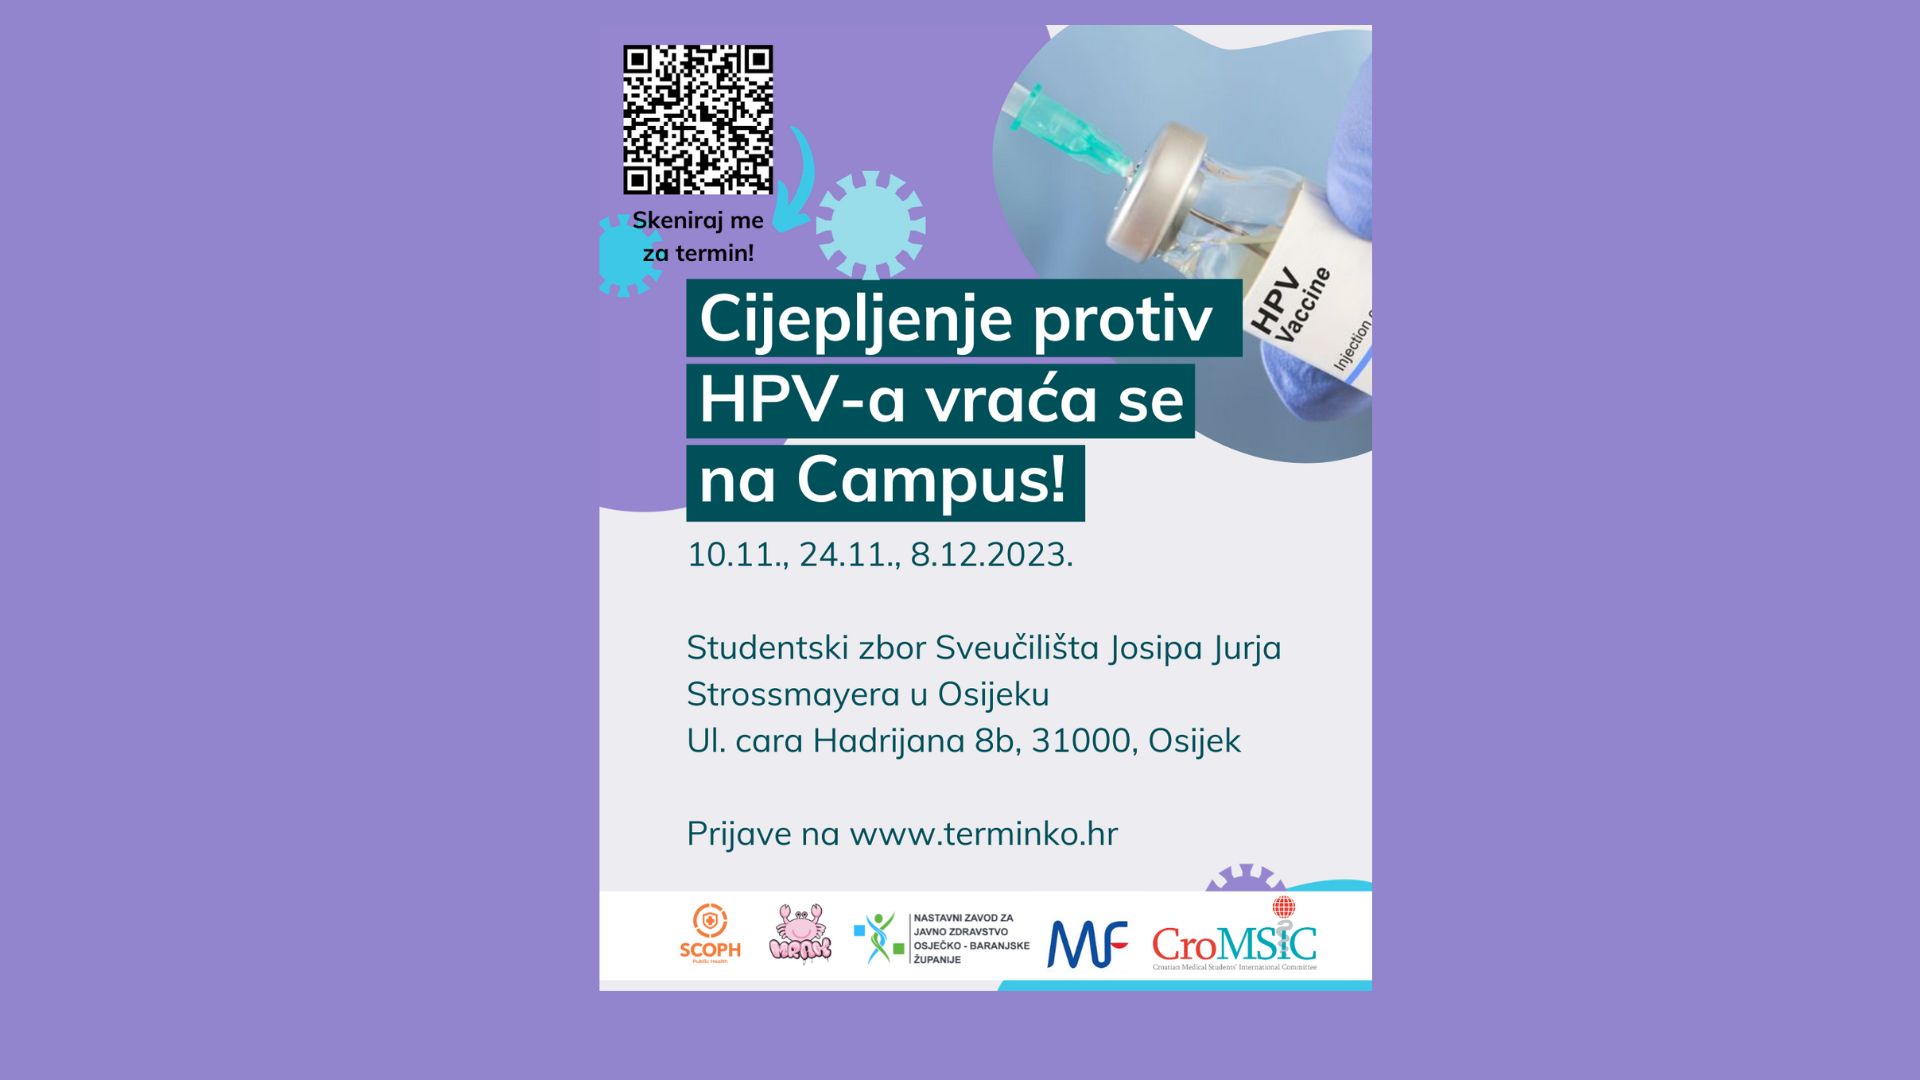 Besplatno cijepljenje protiv HPV-a vraća se na campus!